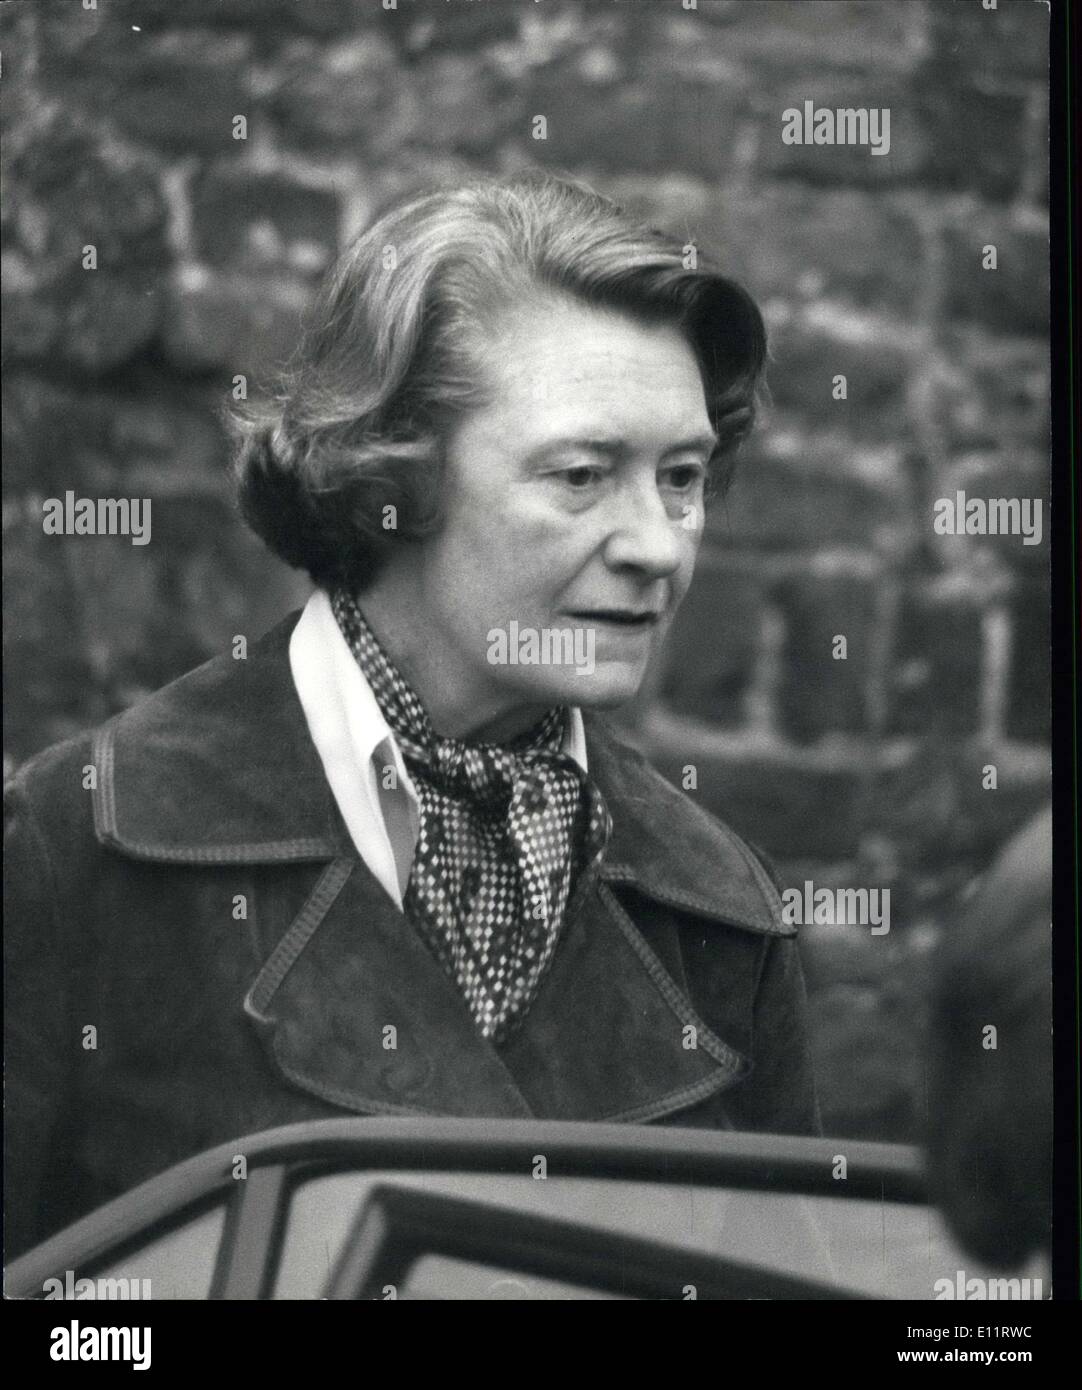 Ottobre 15, 1979 - Inchiesta Di Neave Airey a Westminster. La foto mostra la sig.ra Airey Neave visto arrivare al Westminster Cornorers corte per l'inchiesta di suo marito il sig. Airey Neave, assassinato dall'IRA all'inizio di questo decennio. Foto Stock